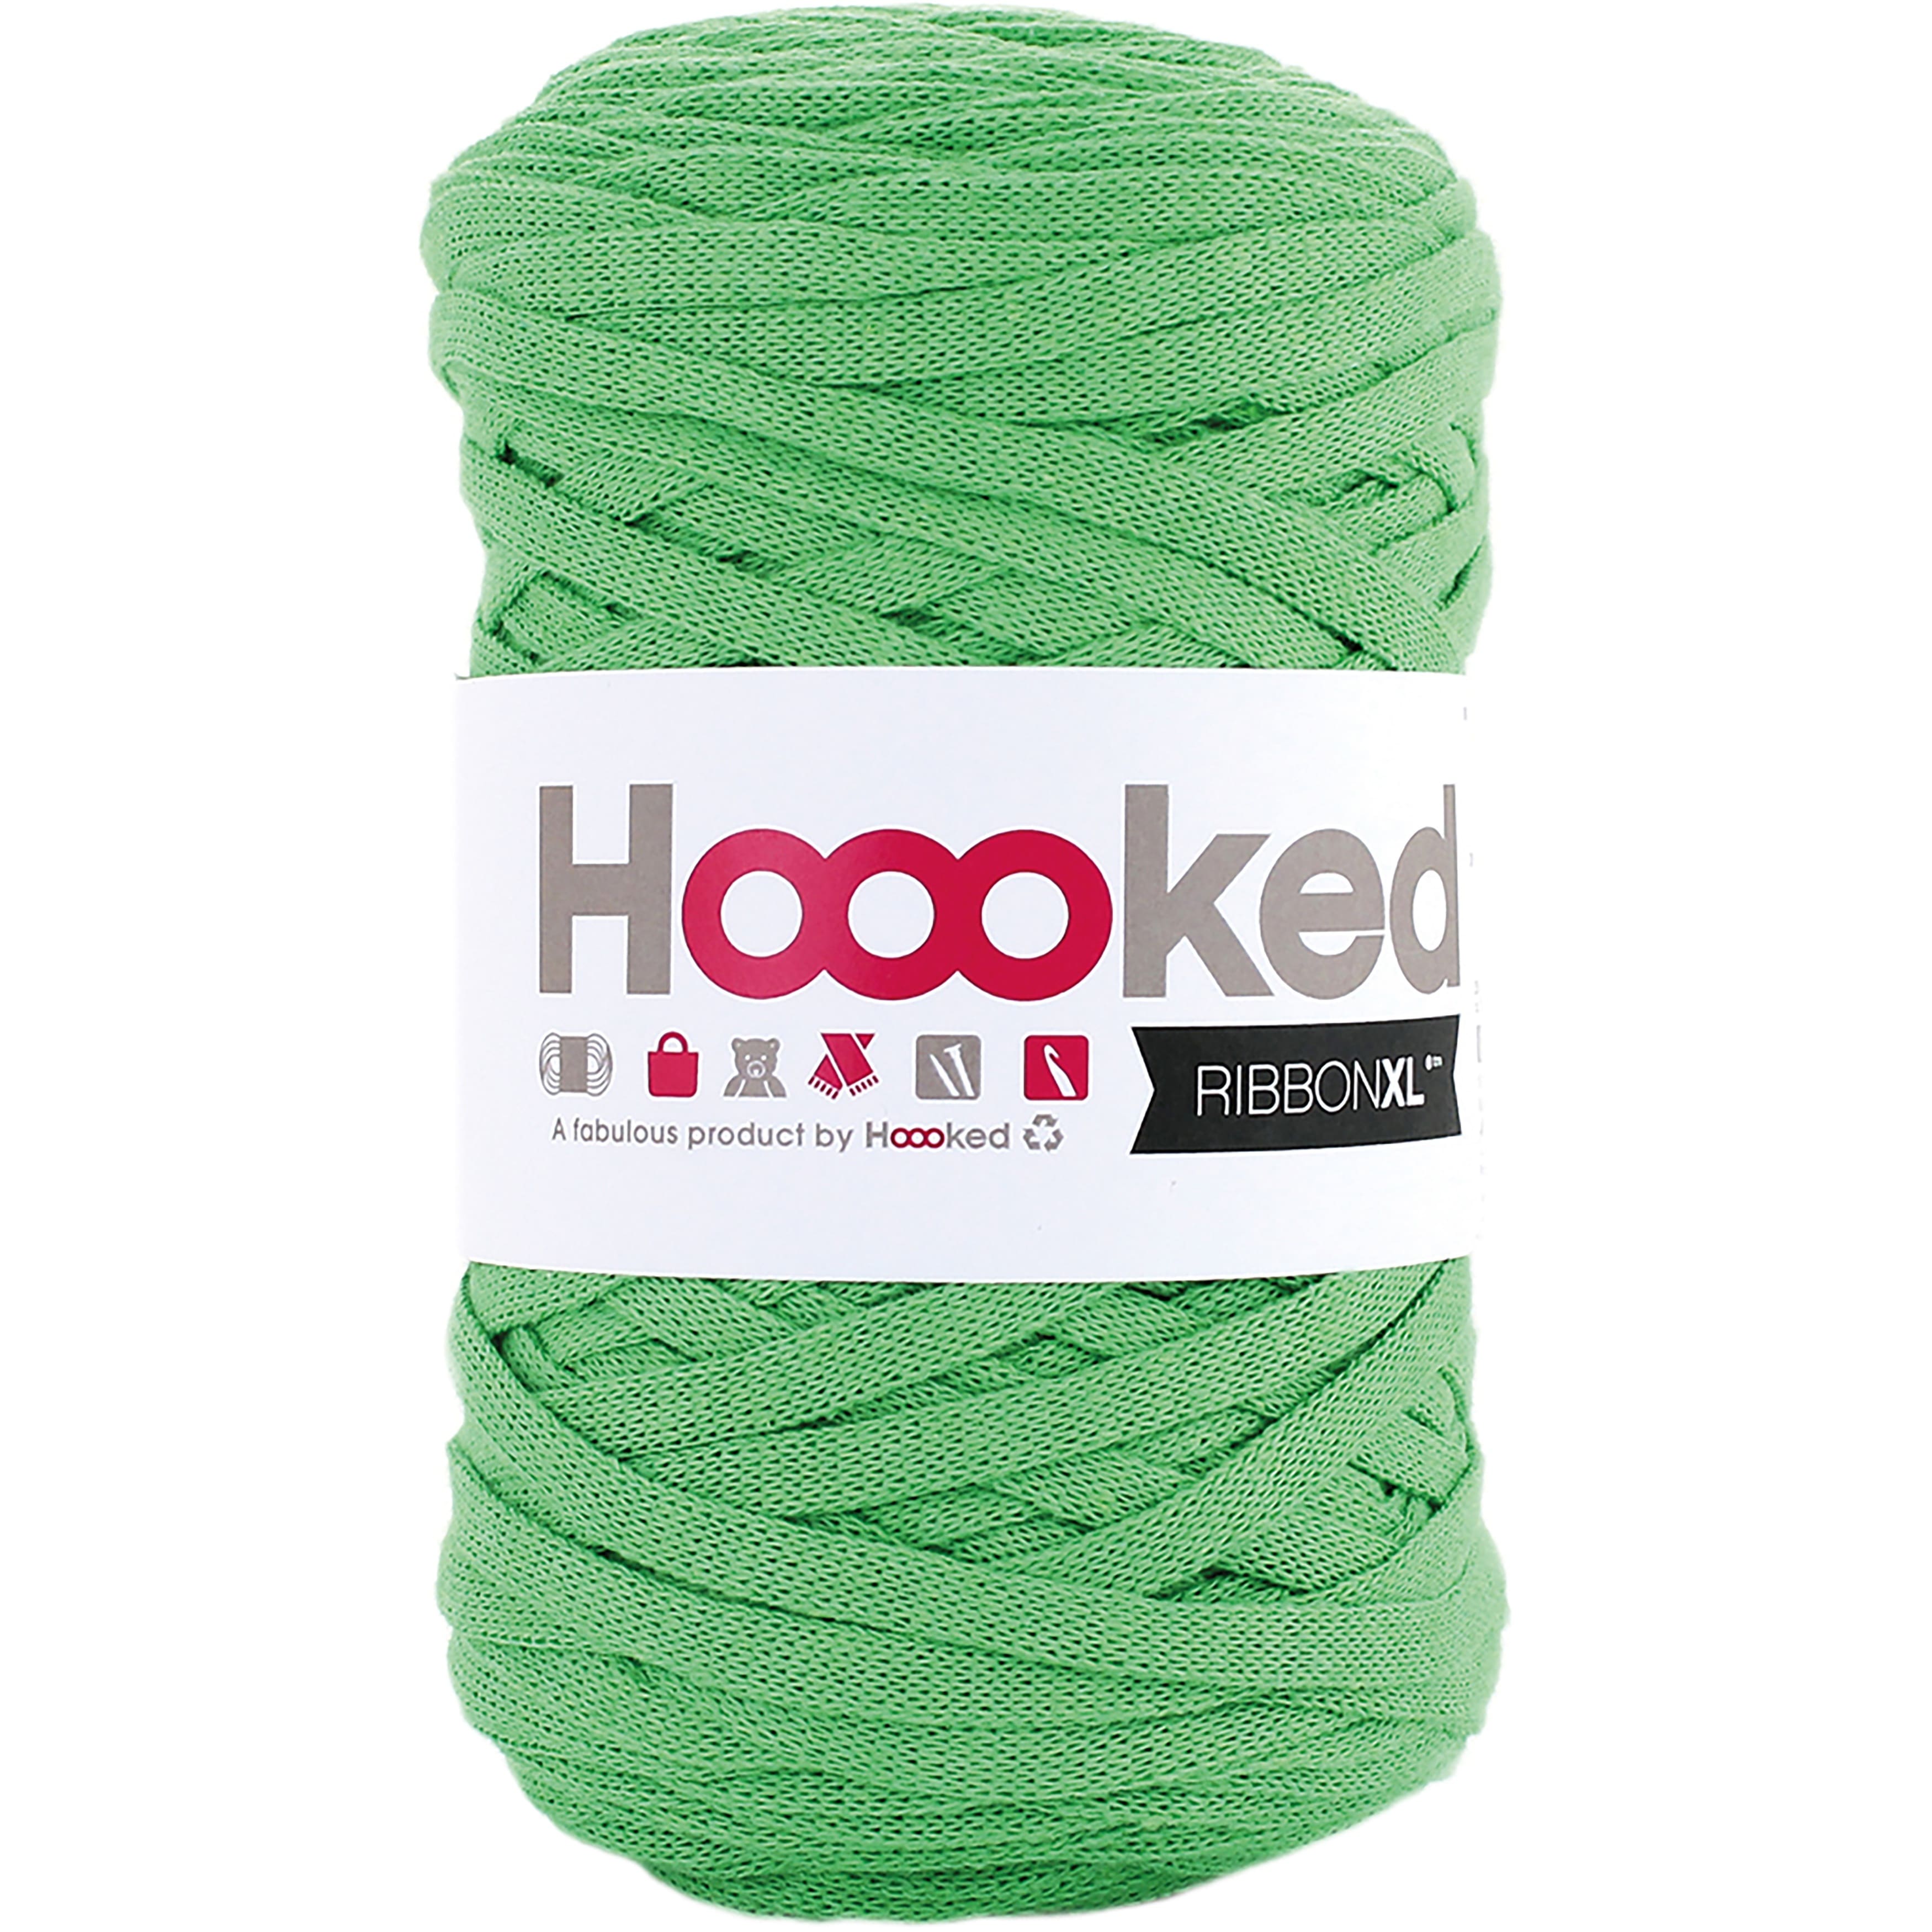 Hooked BV Company Hoooked Solids T-Shirt Ribbon Yarn - Salad Green 